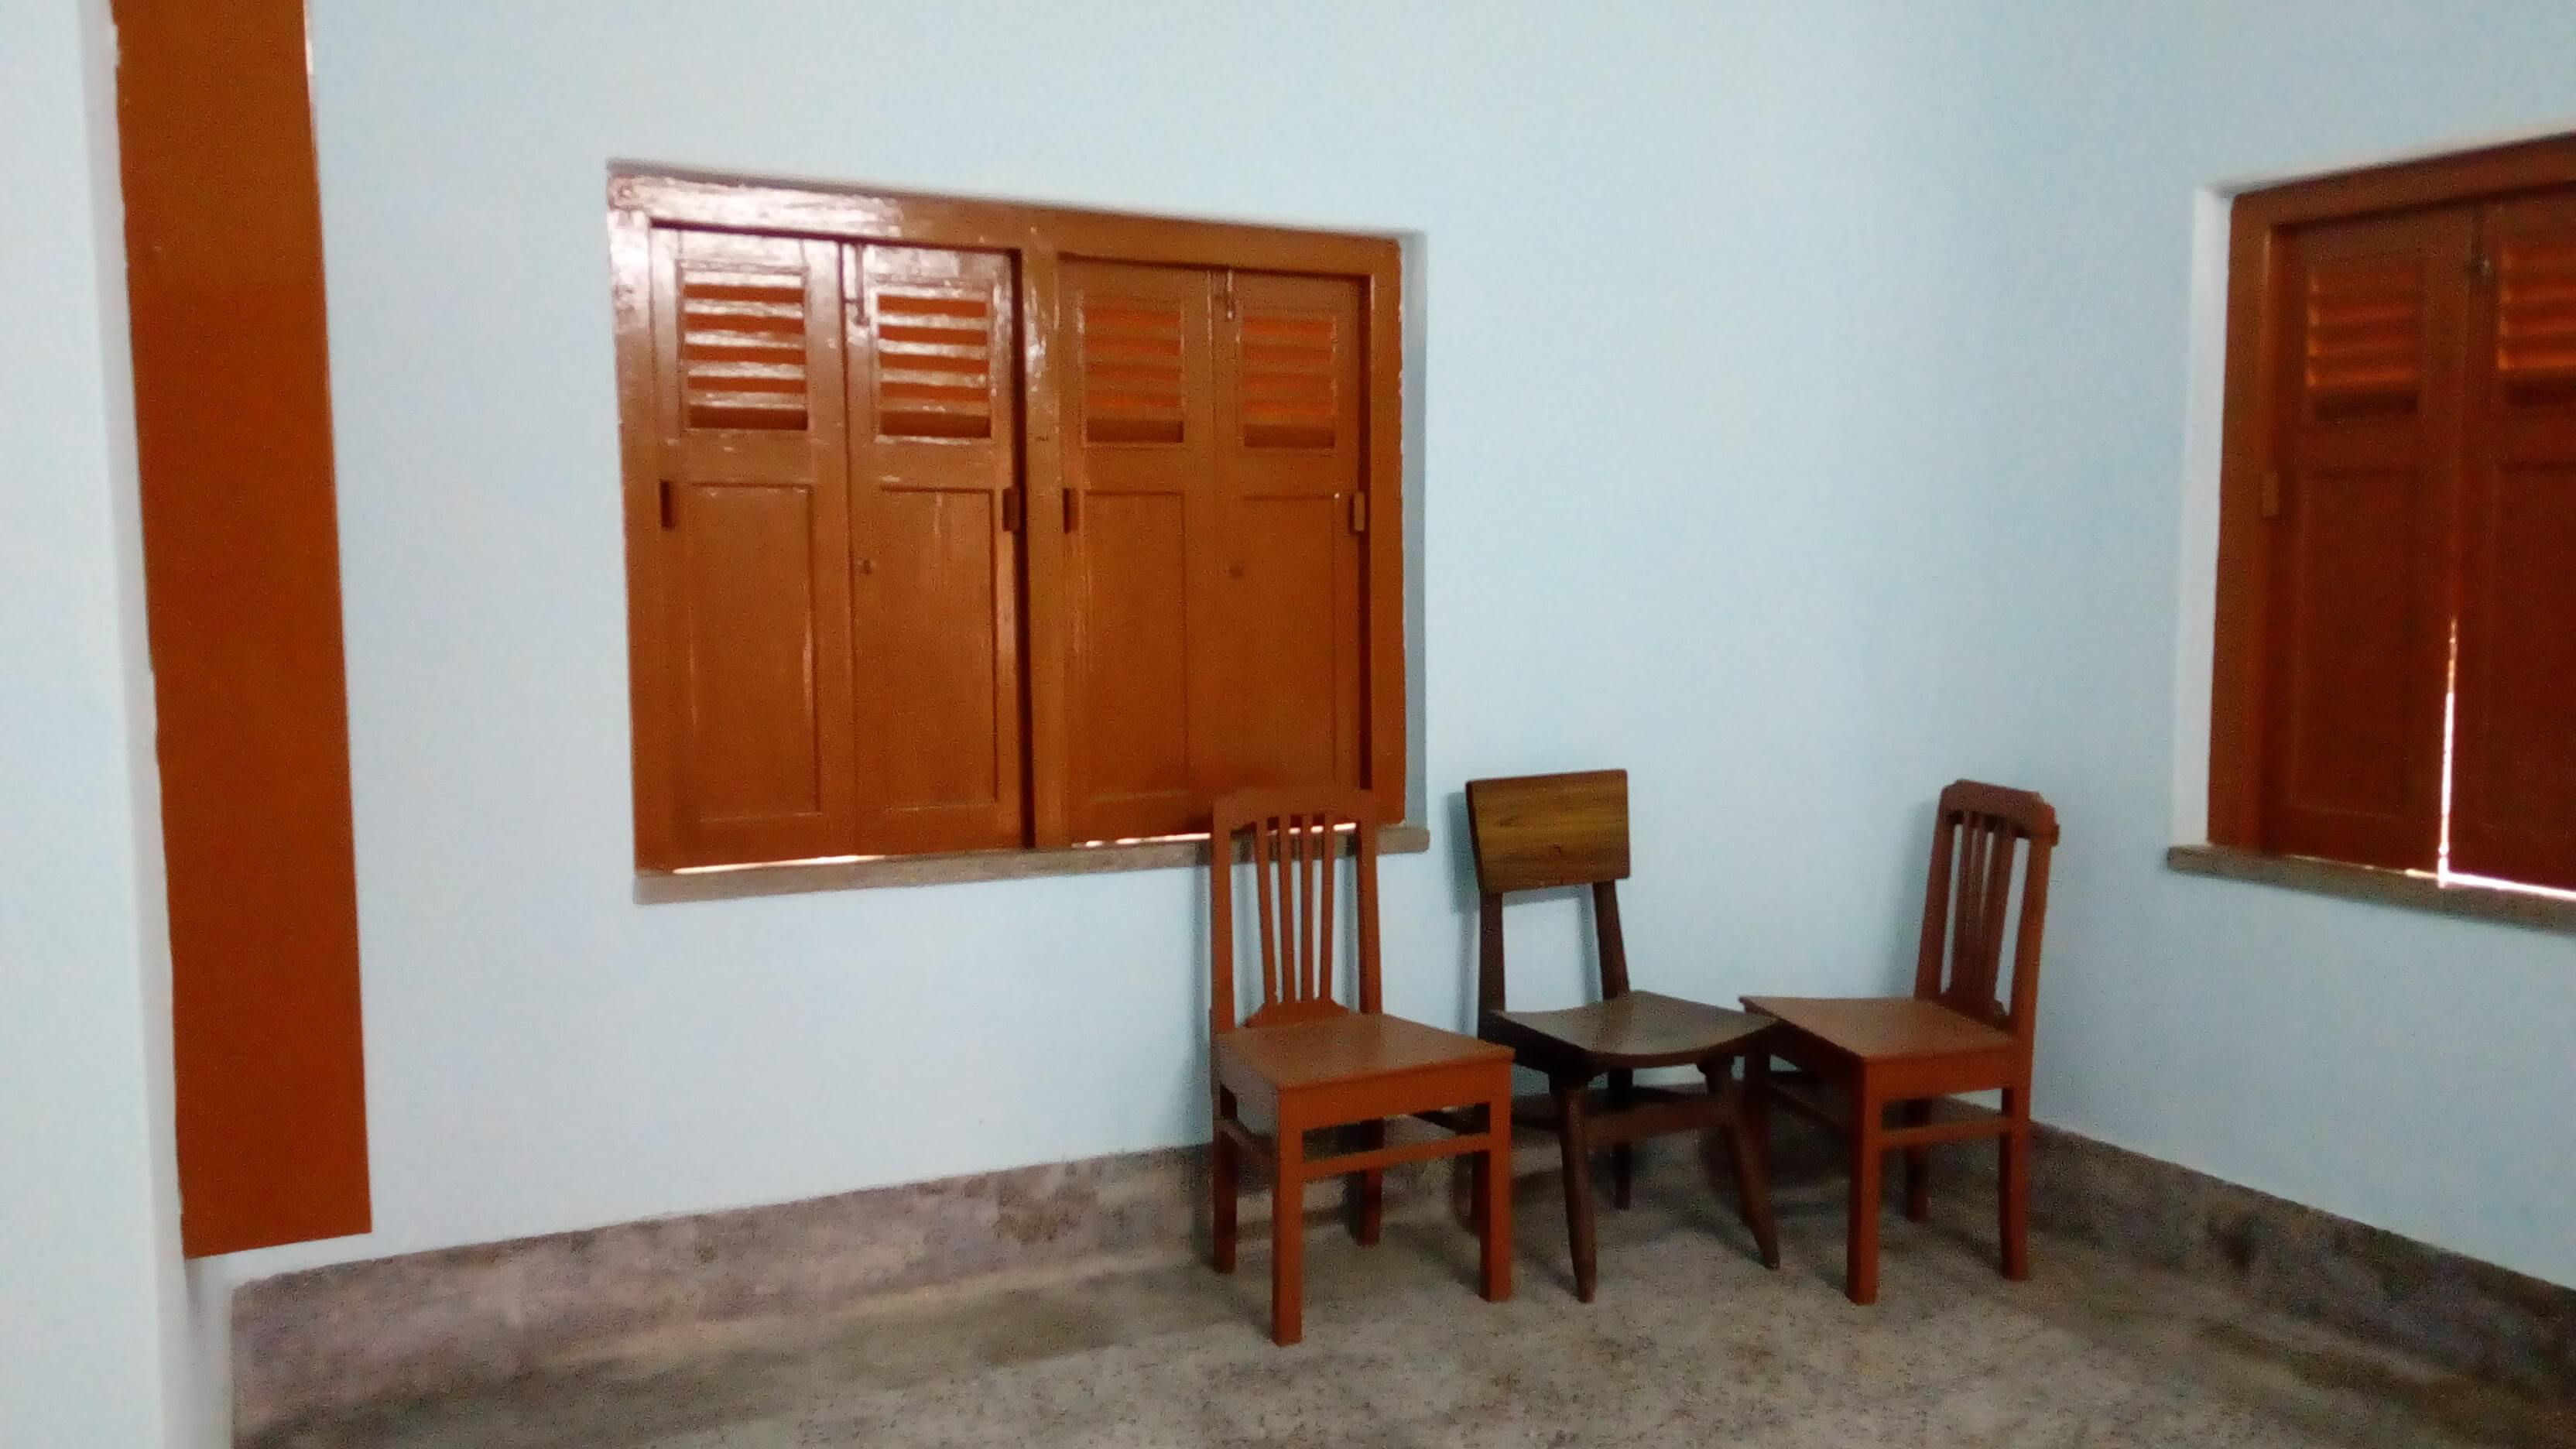 Office For Rent in Harish Mukherjee Road,Kolkata (Id:21318)